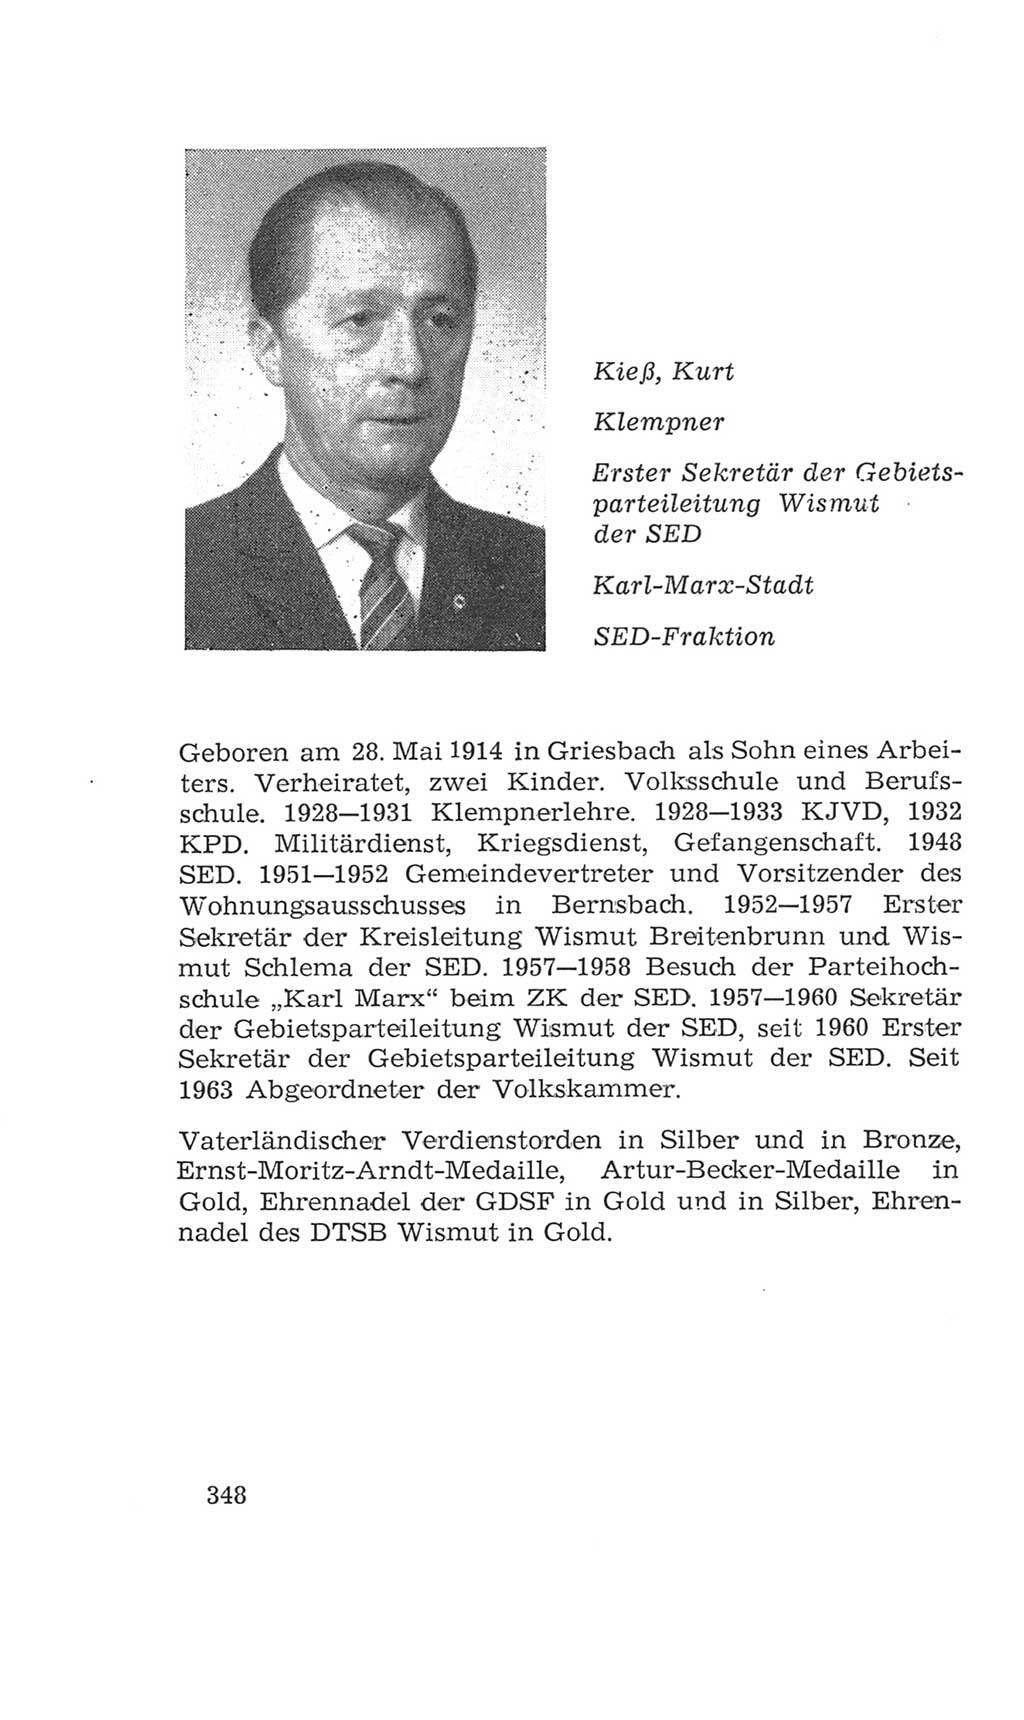 Volkskammer (VK) der Deutschen Demokratischen Republik (DDR), 4. Wahlperiode 1963-1967, Seite 348 (VK. DDR 4. WP. 1963-1967, S. 348)